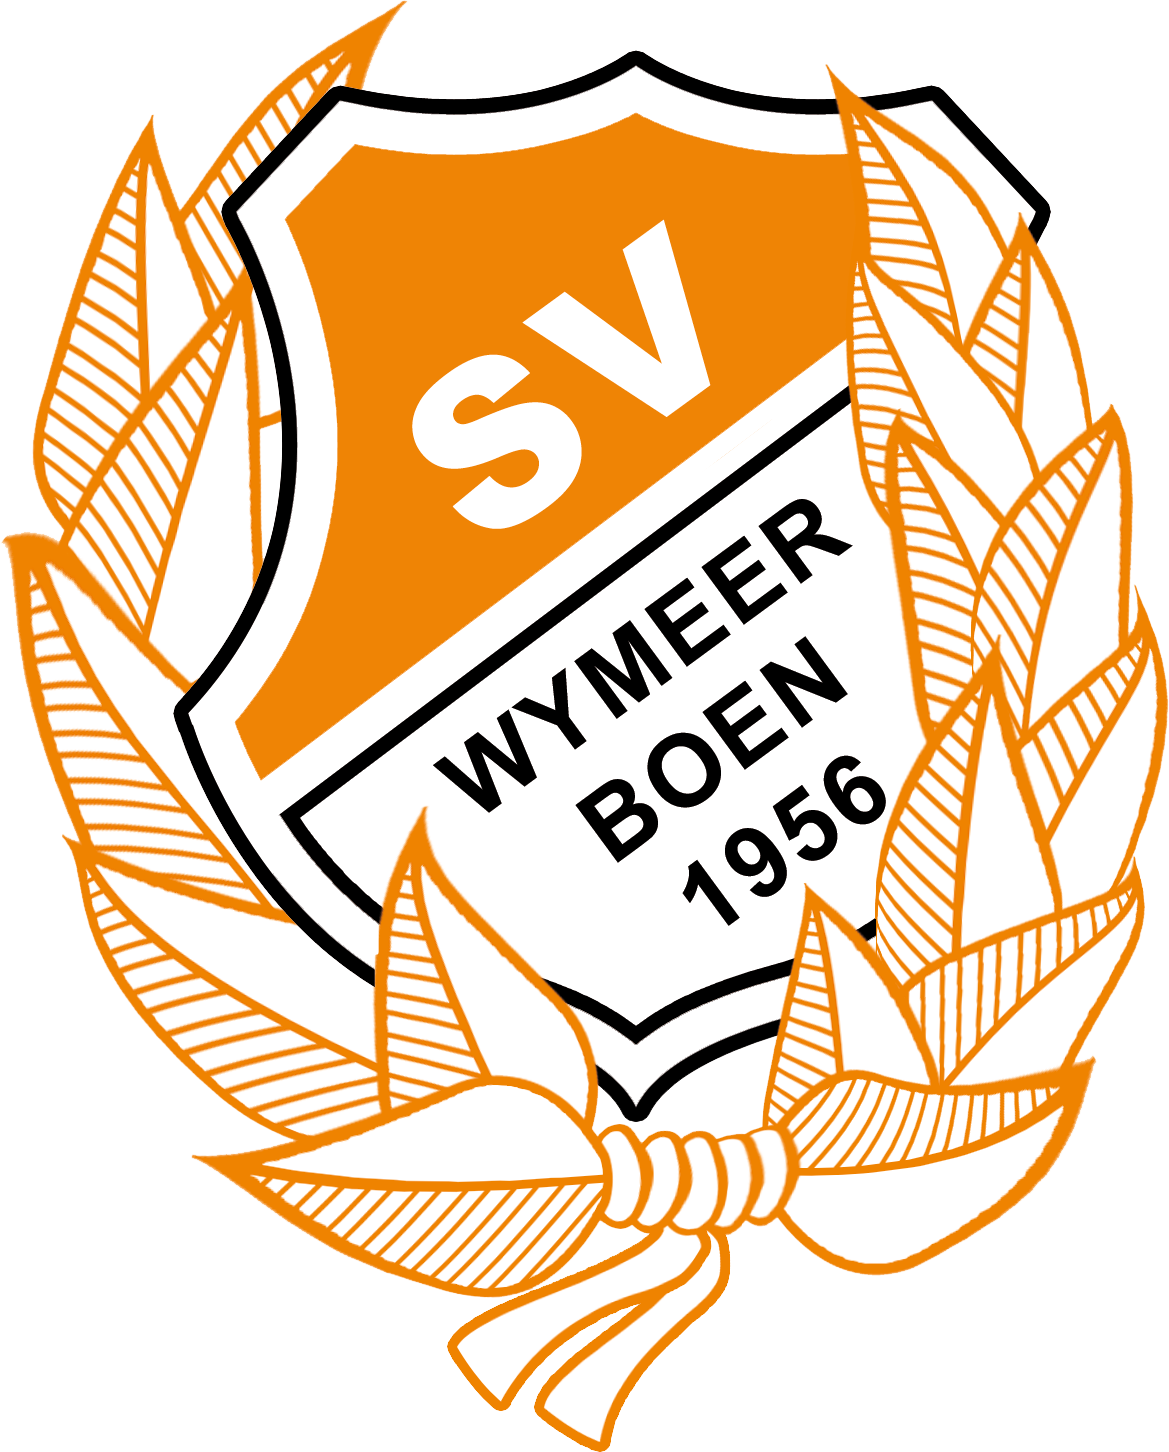 SV Wymeer-Boen